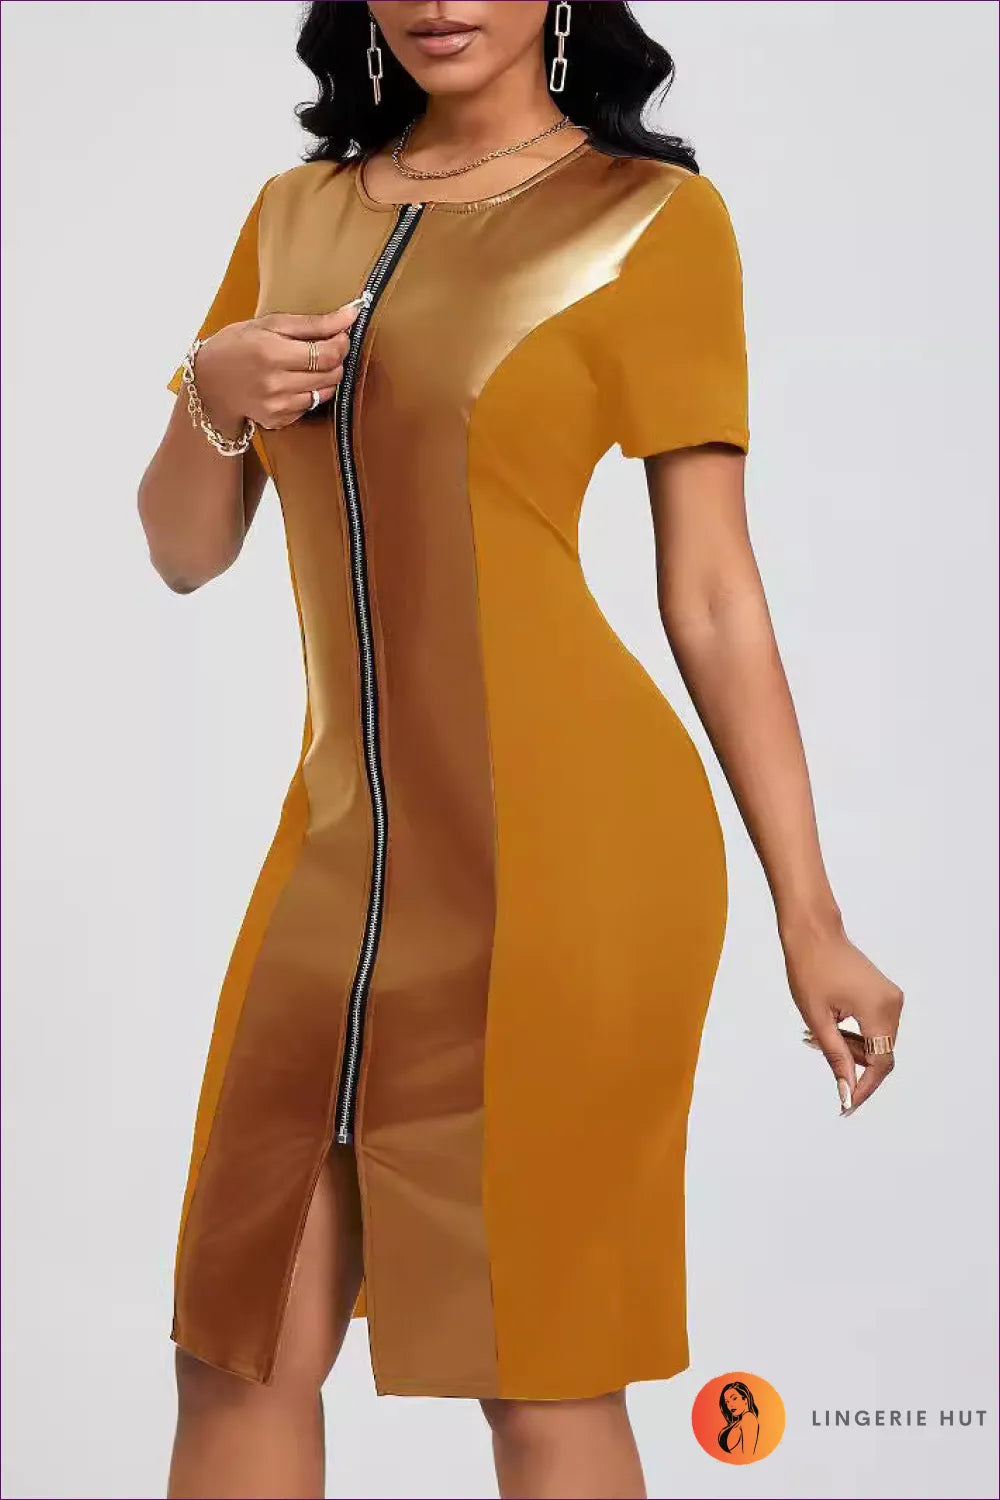 Sleek Gold Zip-up Dress – Modern & Chic